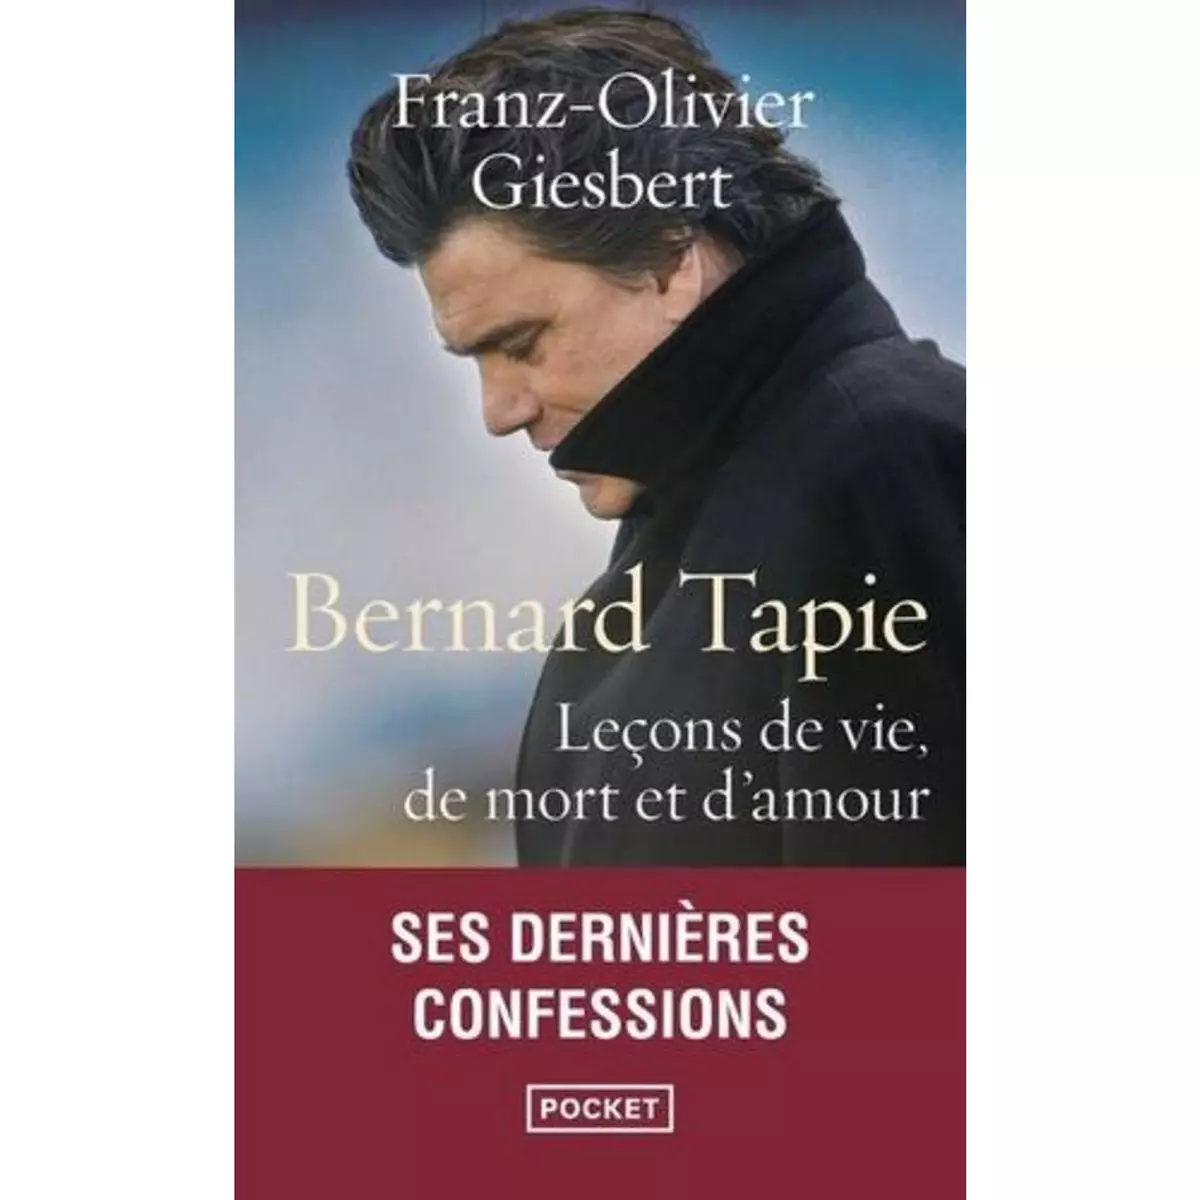  BERNARD TAPIE. LECONS DE VIE, DE MORT ET D'AMOUR, Giesbert Franz-Olivier